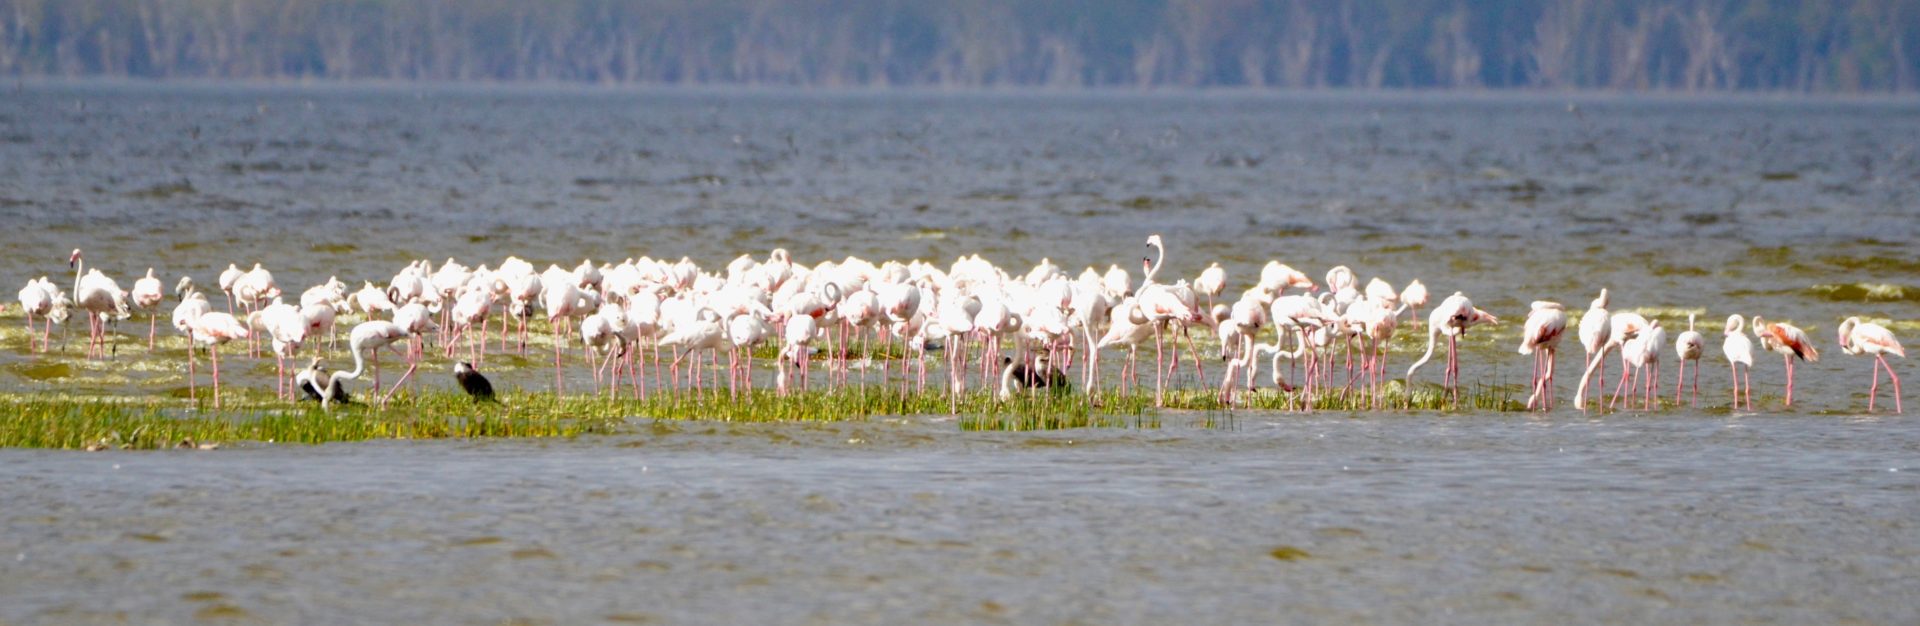 Lake Nahuru Flamingos